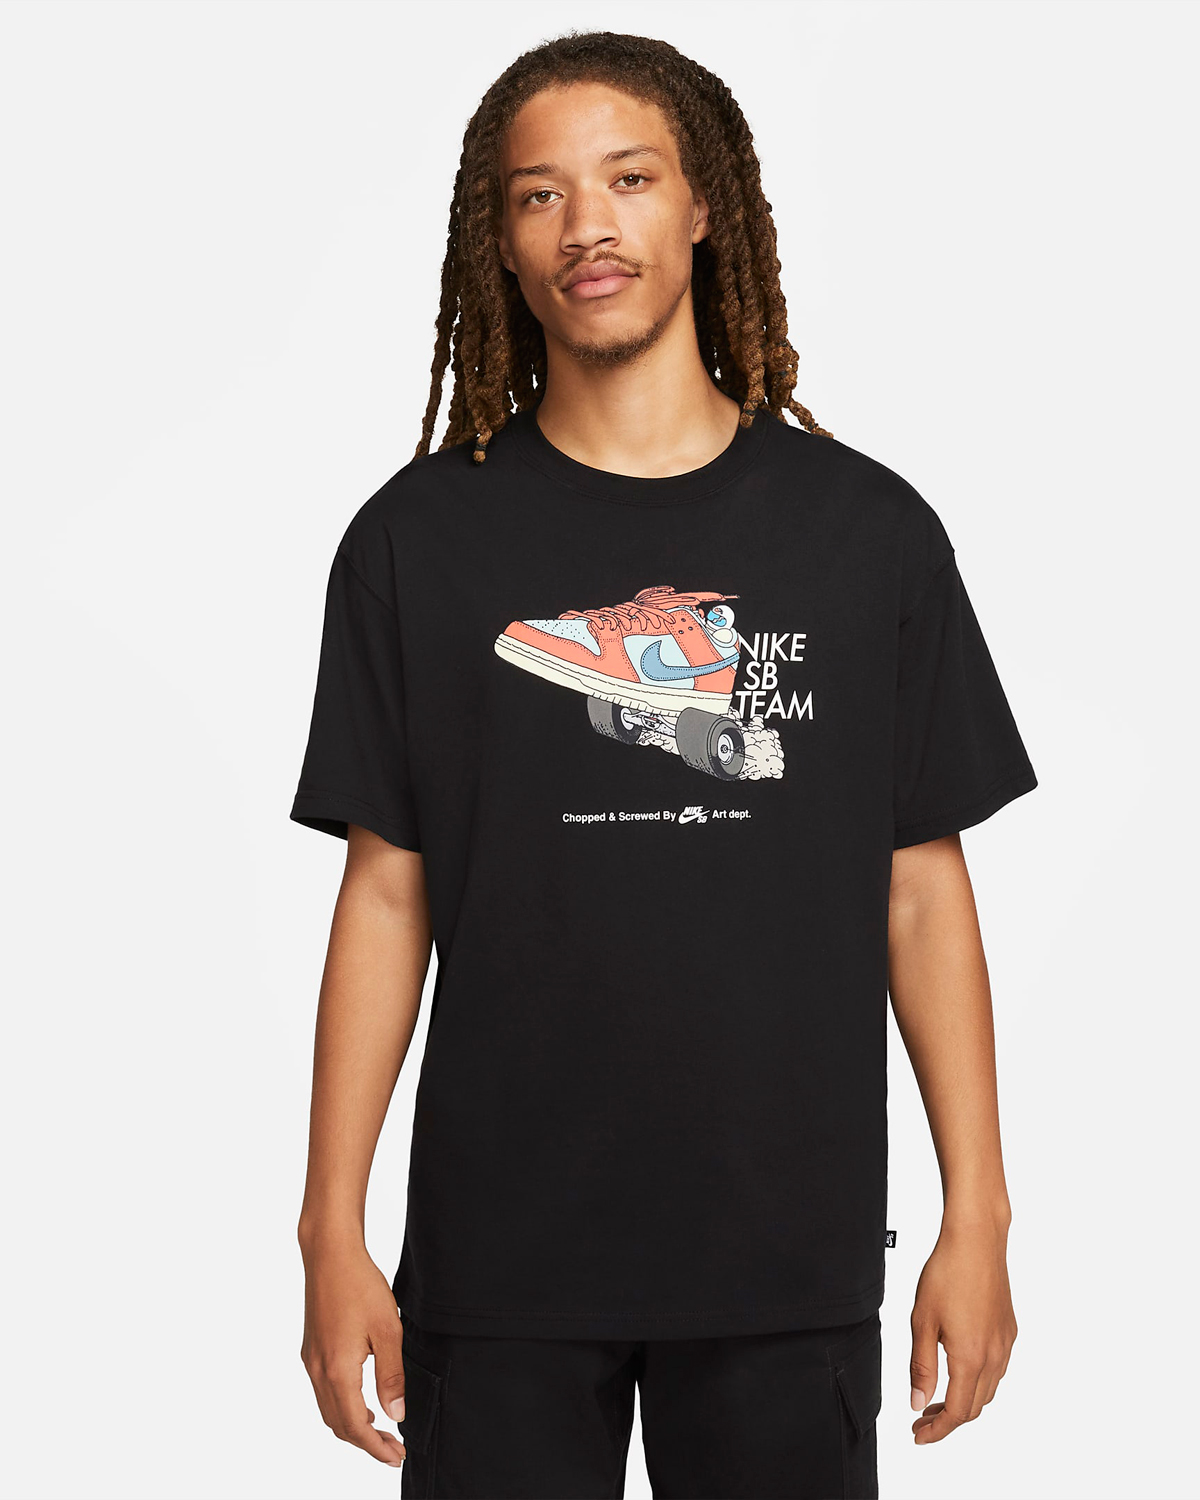 Nike-SB-Skate-Team-T-Shirt-Black-1